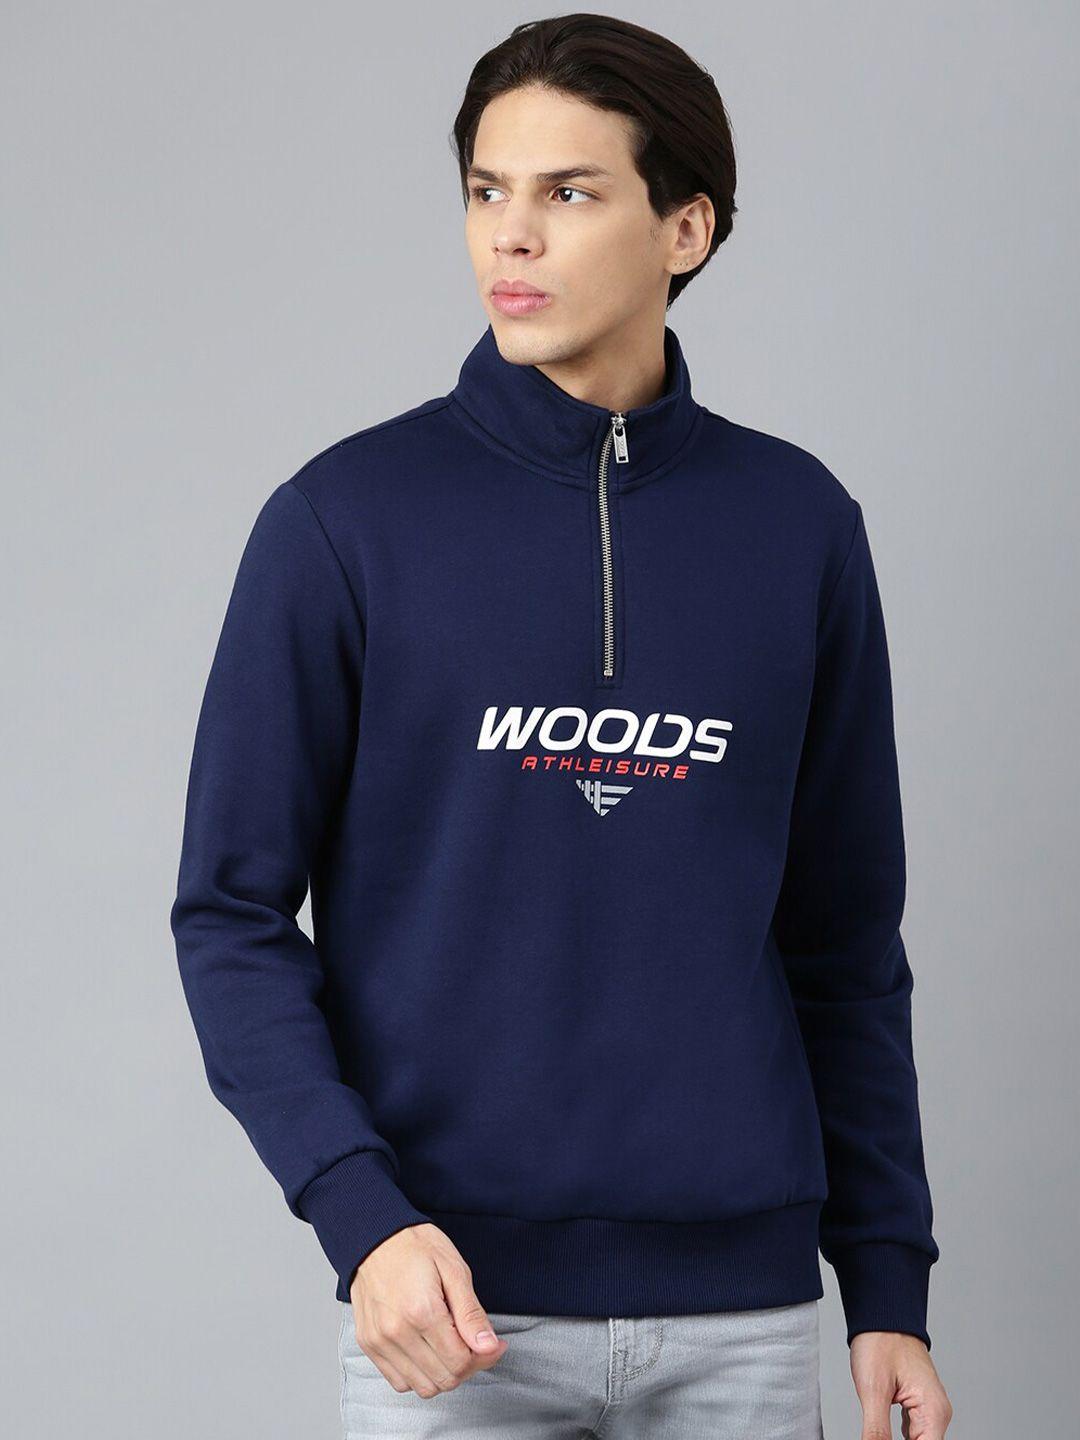 woods men navy blue printed mock collar cotton sweatshirt